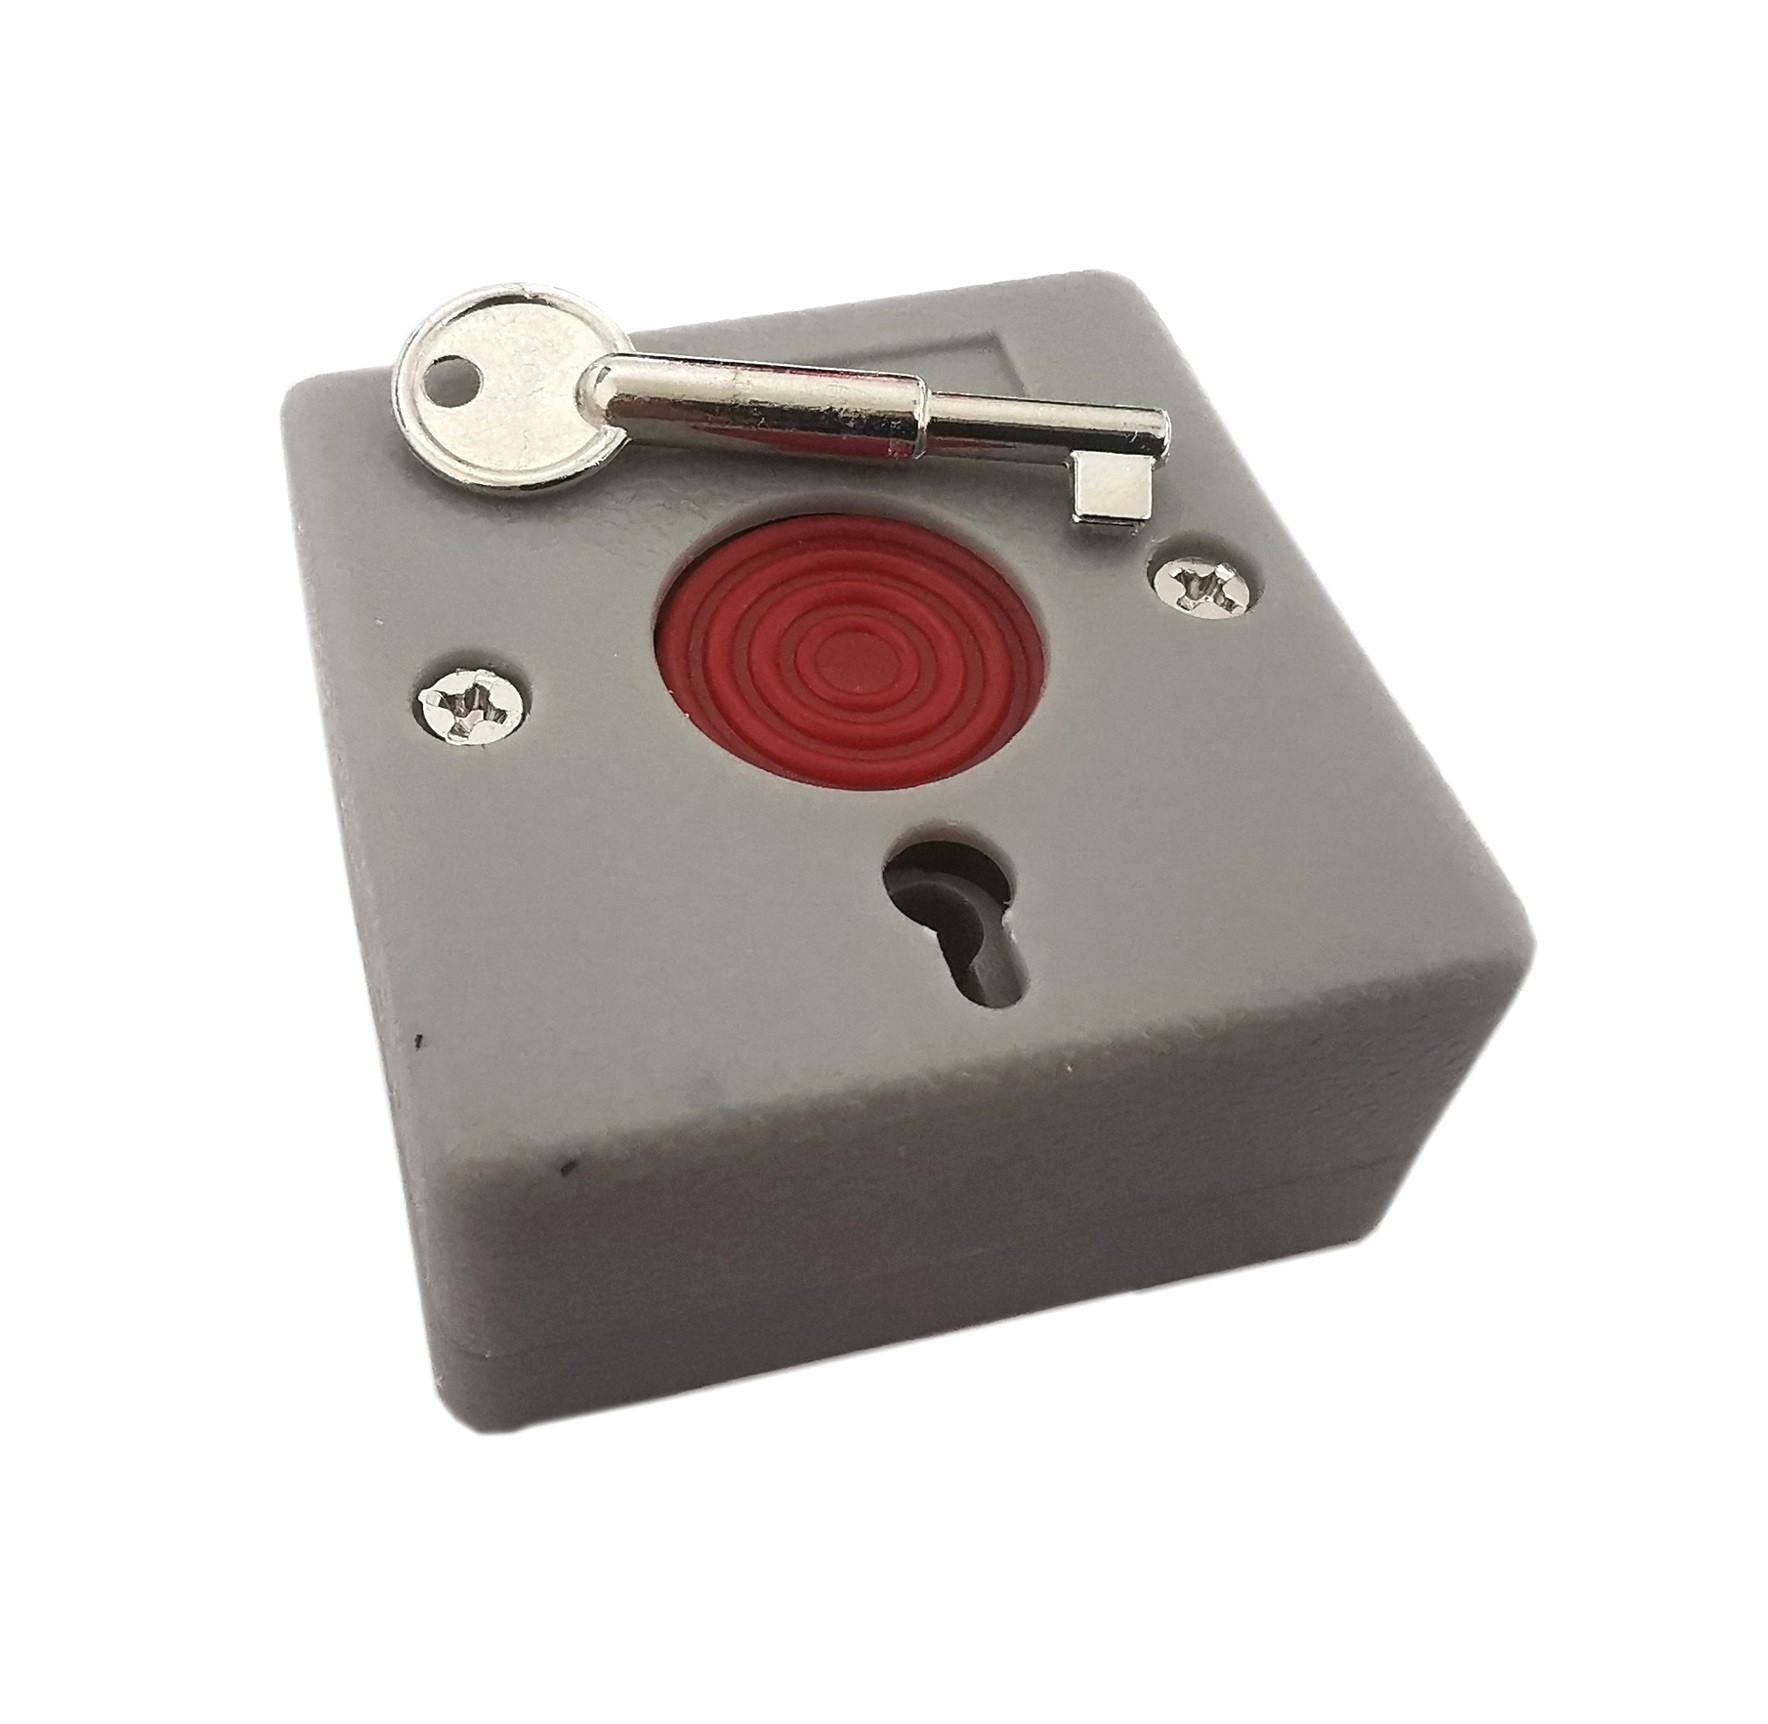 Przycisk alarmowy/antynapadowy z kluczykiem RZ-68